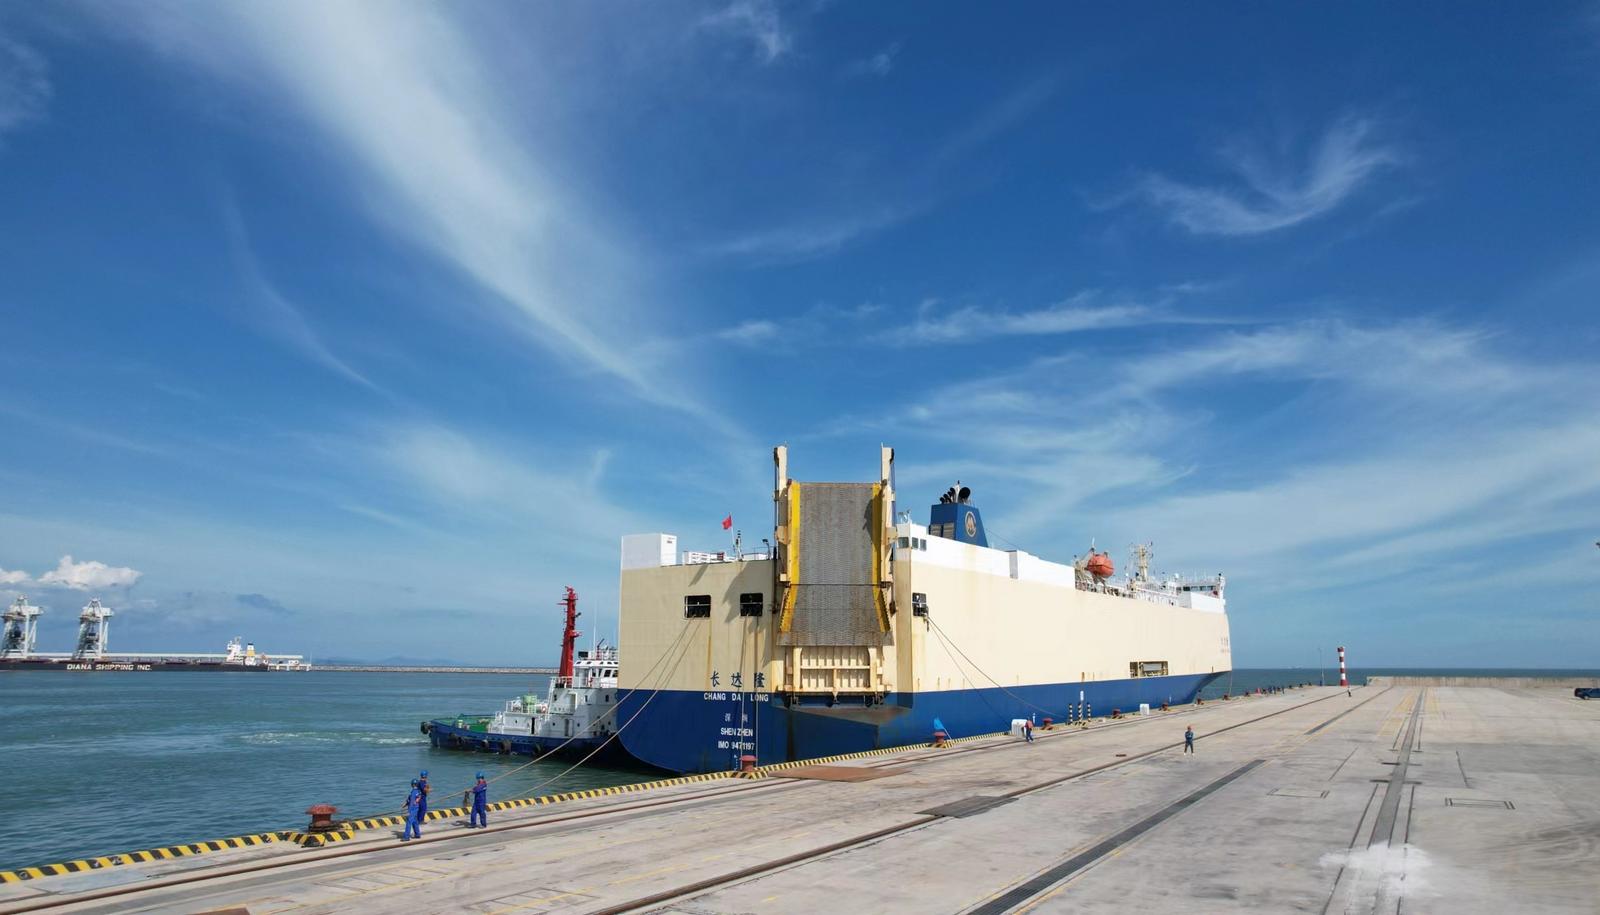 1580辆新能源汽车包船直航泰国 深汕小漠国际物流港创单次最大出运量纪录